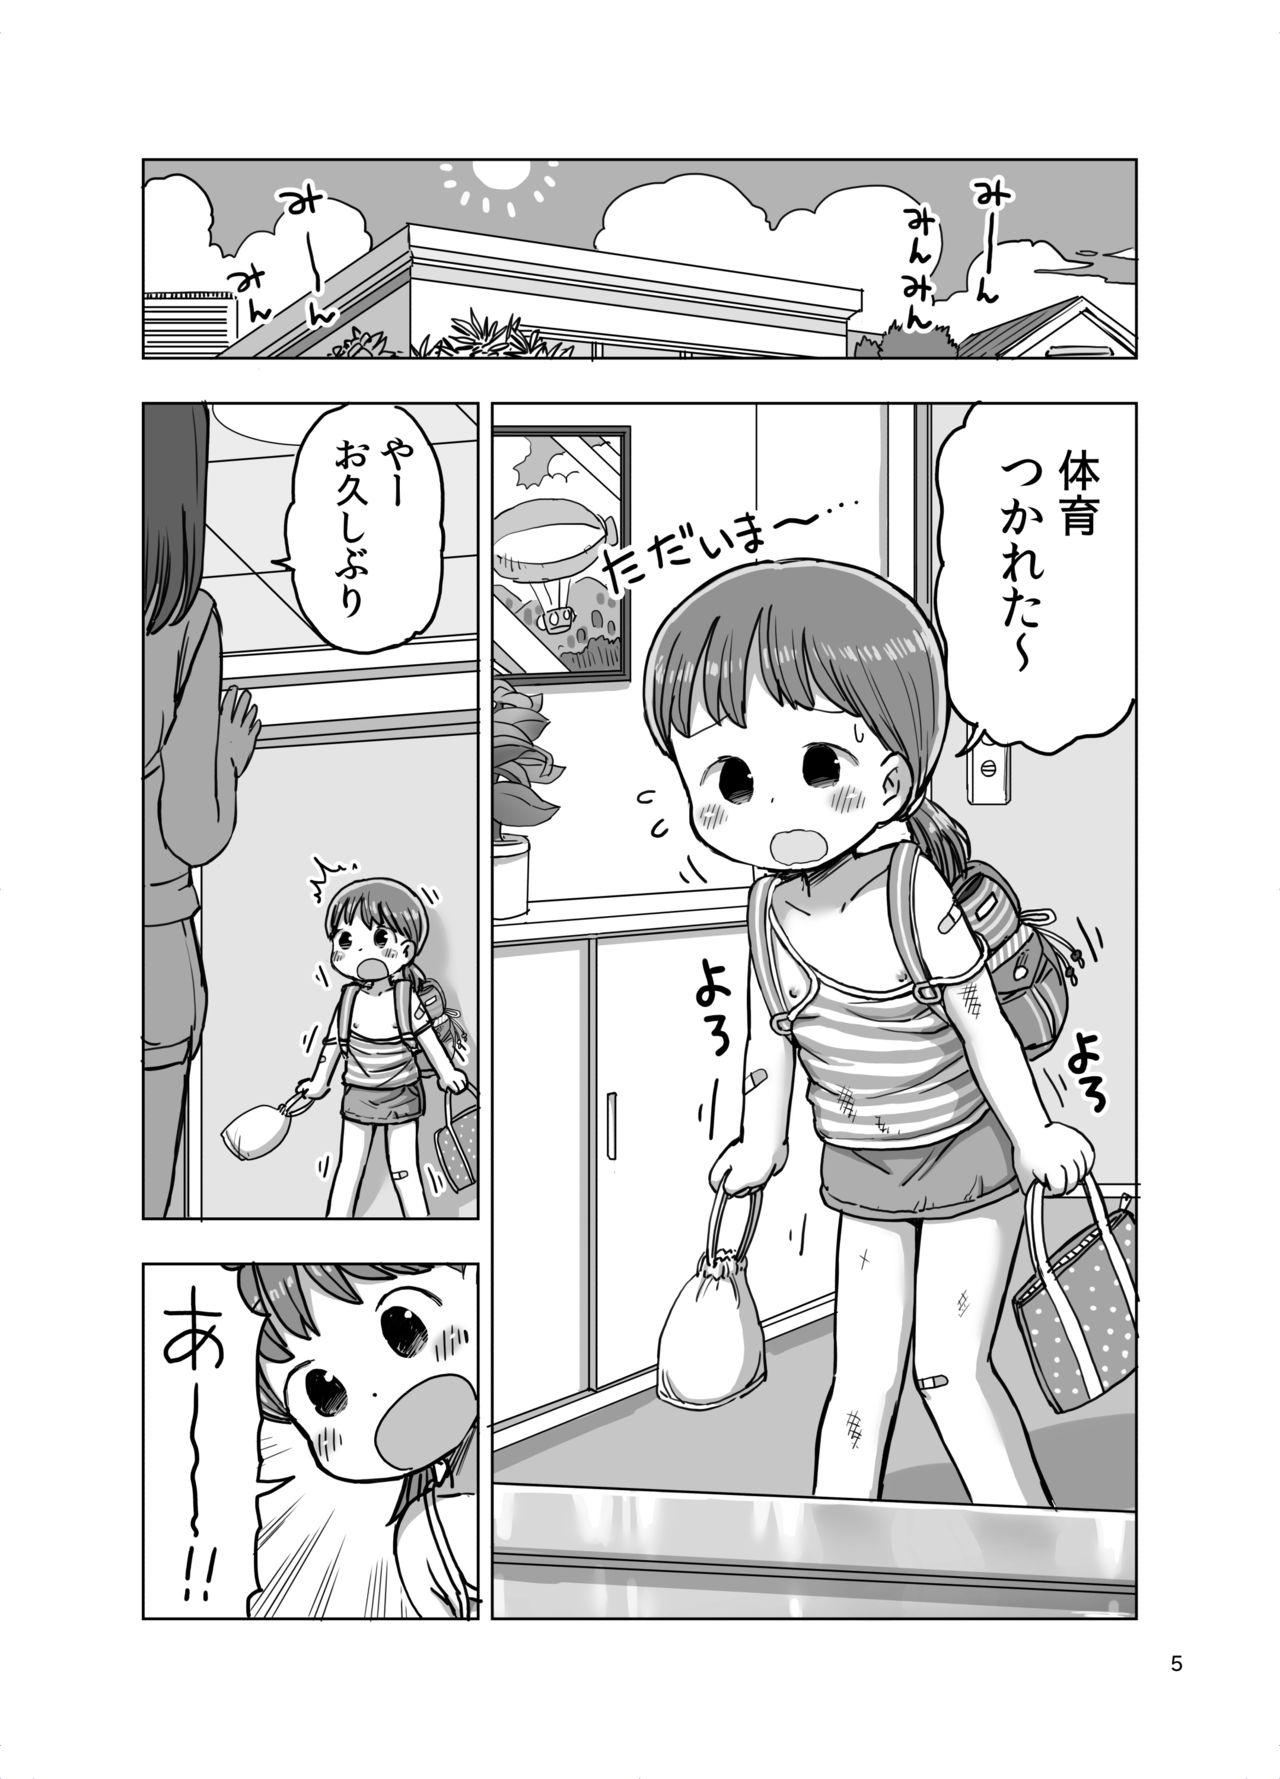 Massage-chuu ni Jirasarete Kossori Onanie Shichau Manga 4